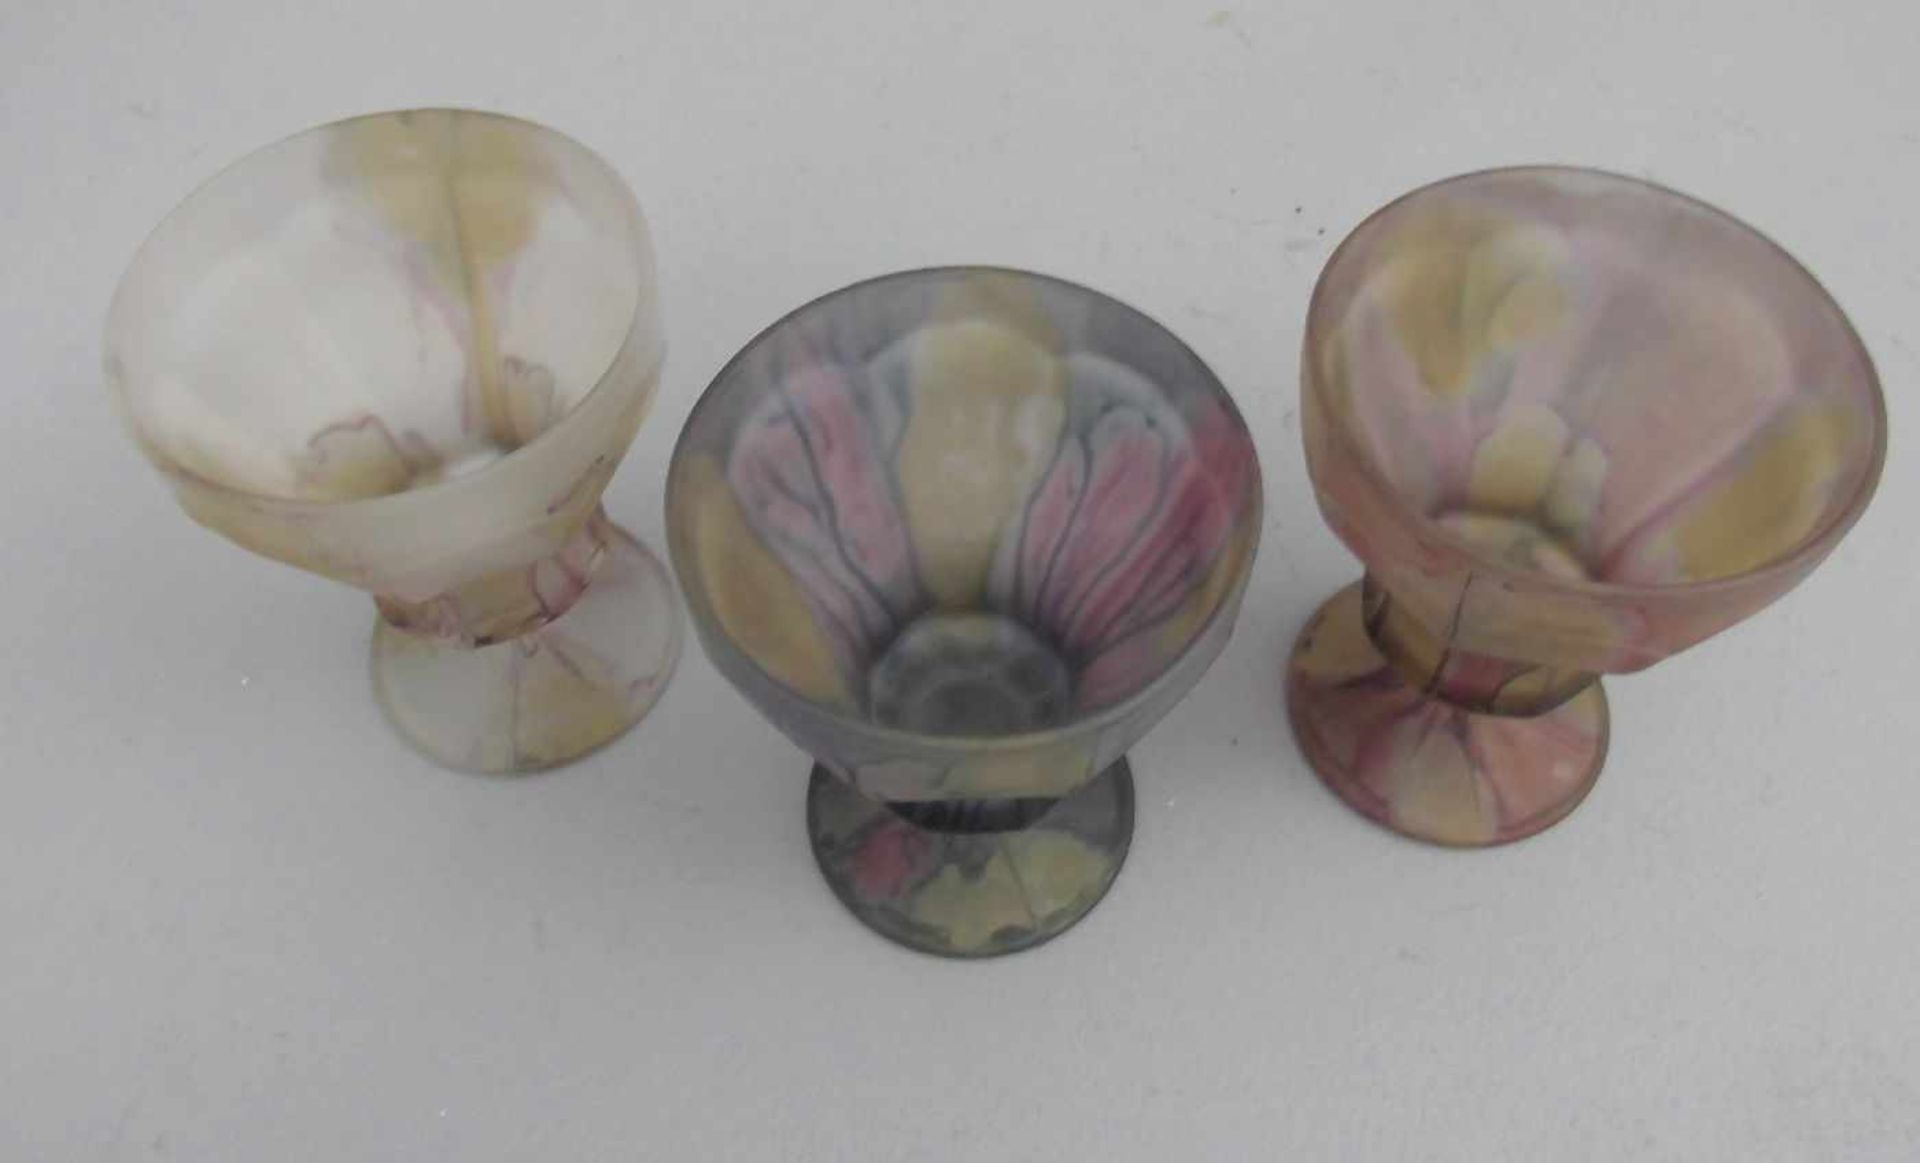 3 EISBECHER / GLAS - FUSSSCHALEN / ice cream glas bowls, Mitte 20. Jh., Pressglas. Konische Form mit - Image 3 of 3